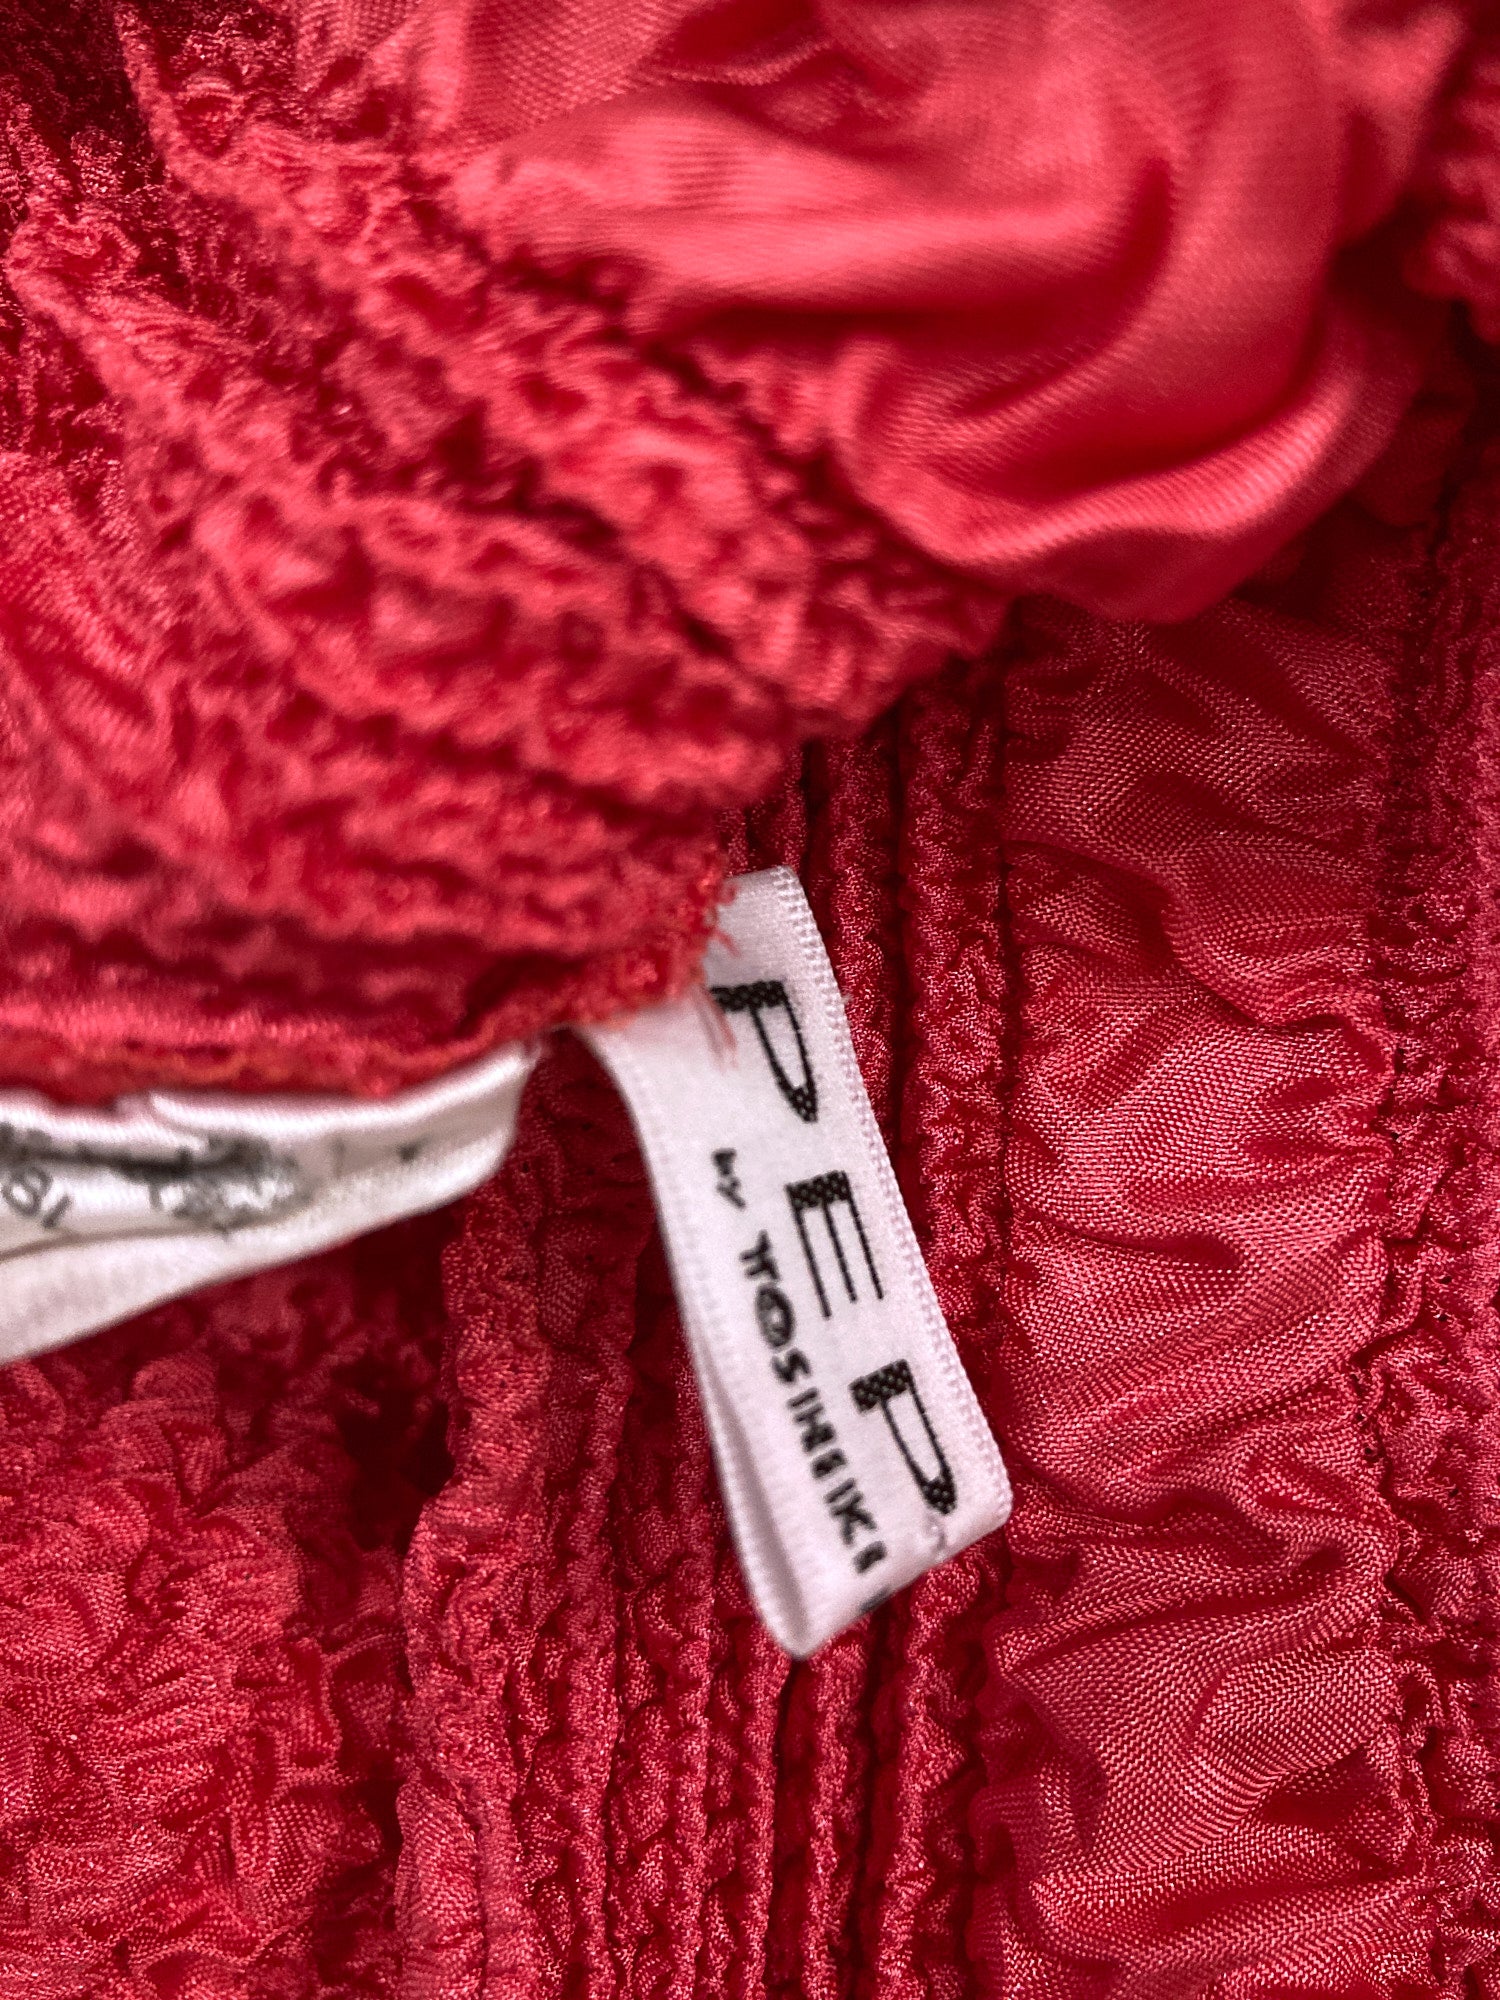 Yoshiki Hishinuma Peplum red pink wrinkled polyester top and skirt set - S M